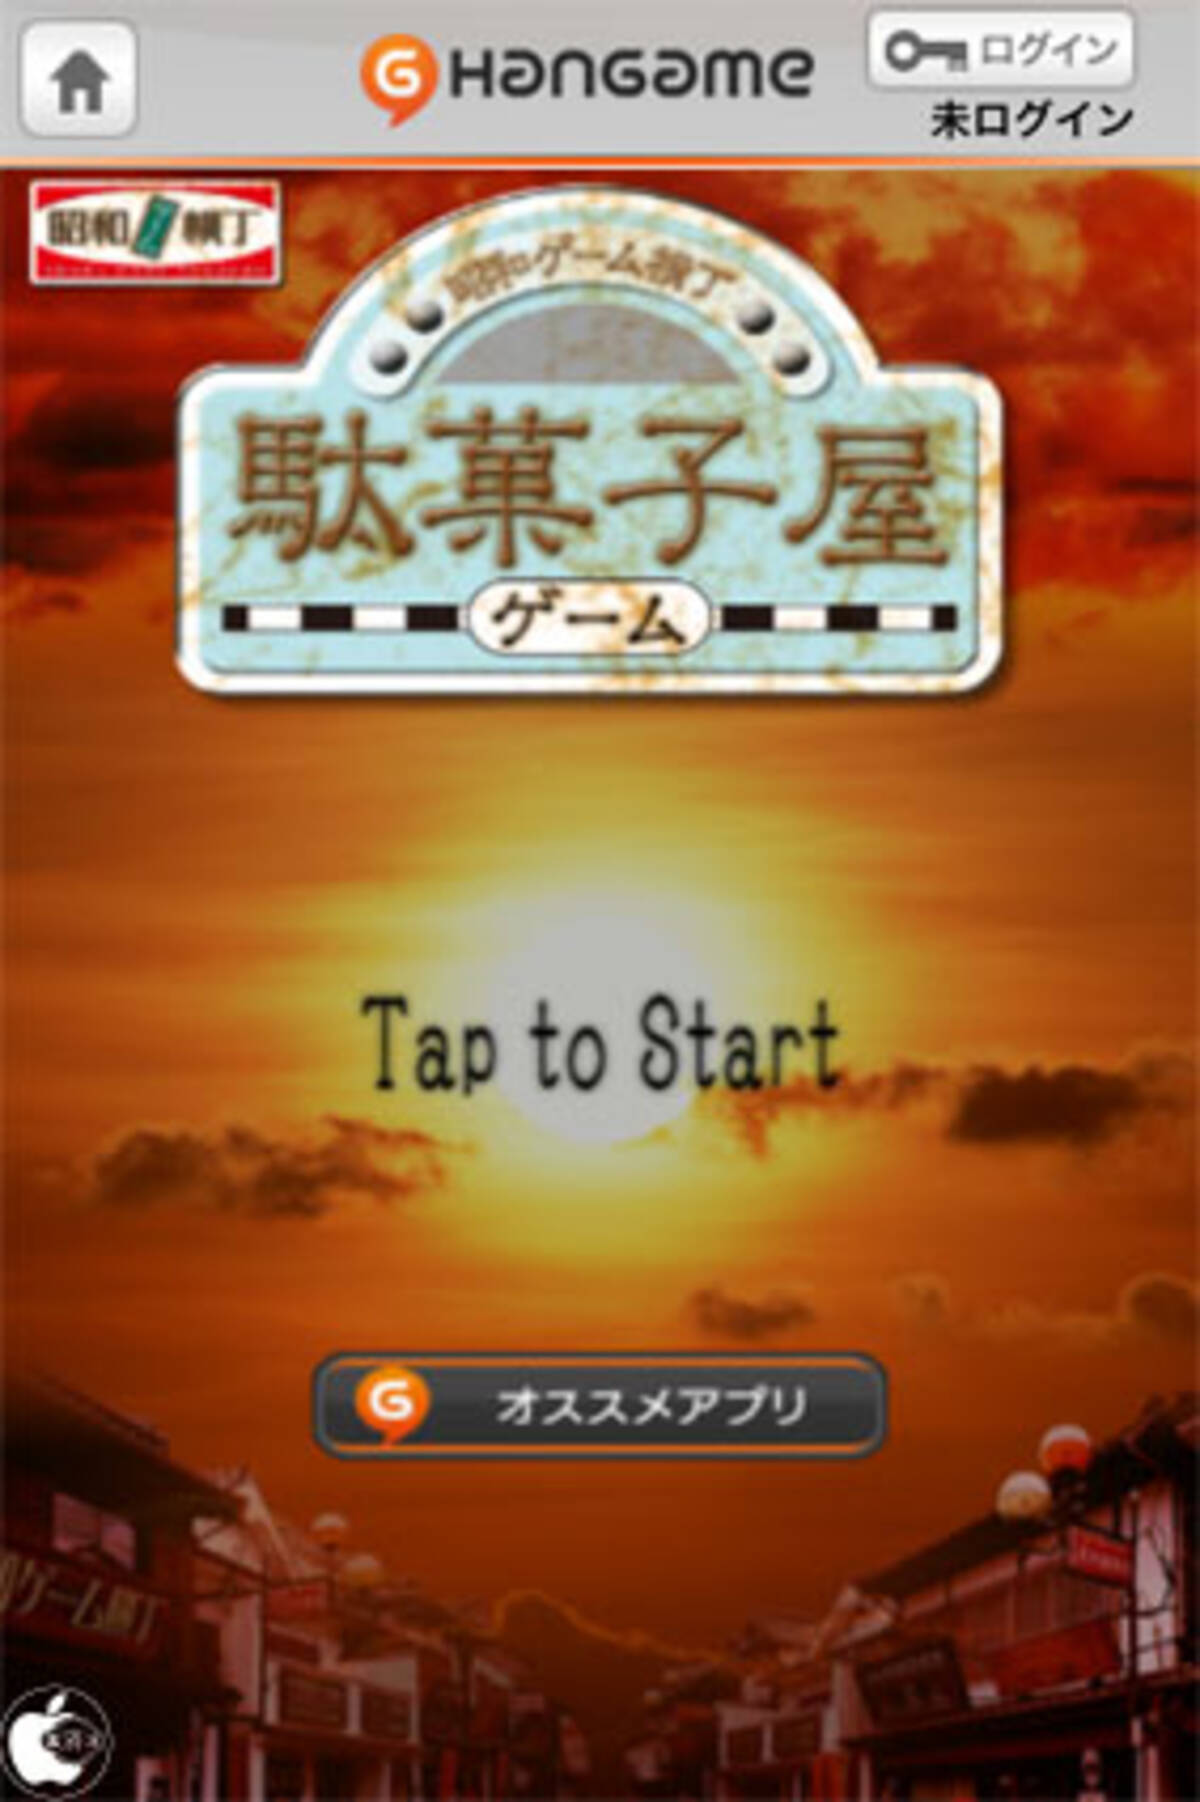 レトロゲームアプリ 駄菓子屋ゲーム By Hangame を試す 11年10月22日 エキサイトニュース